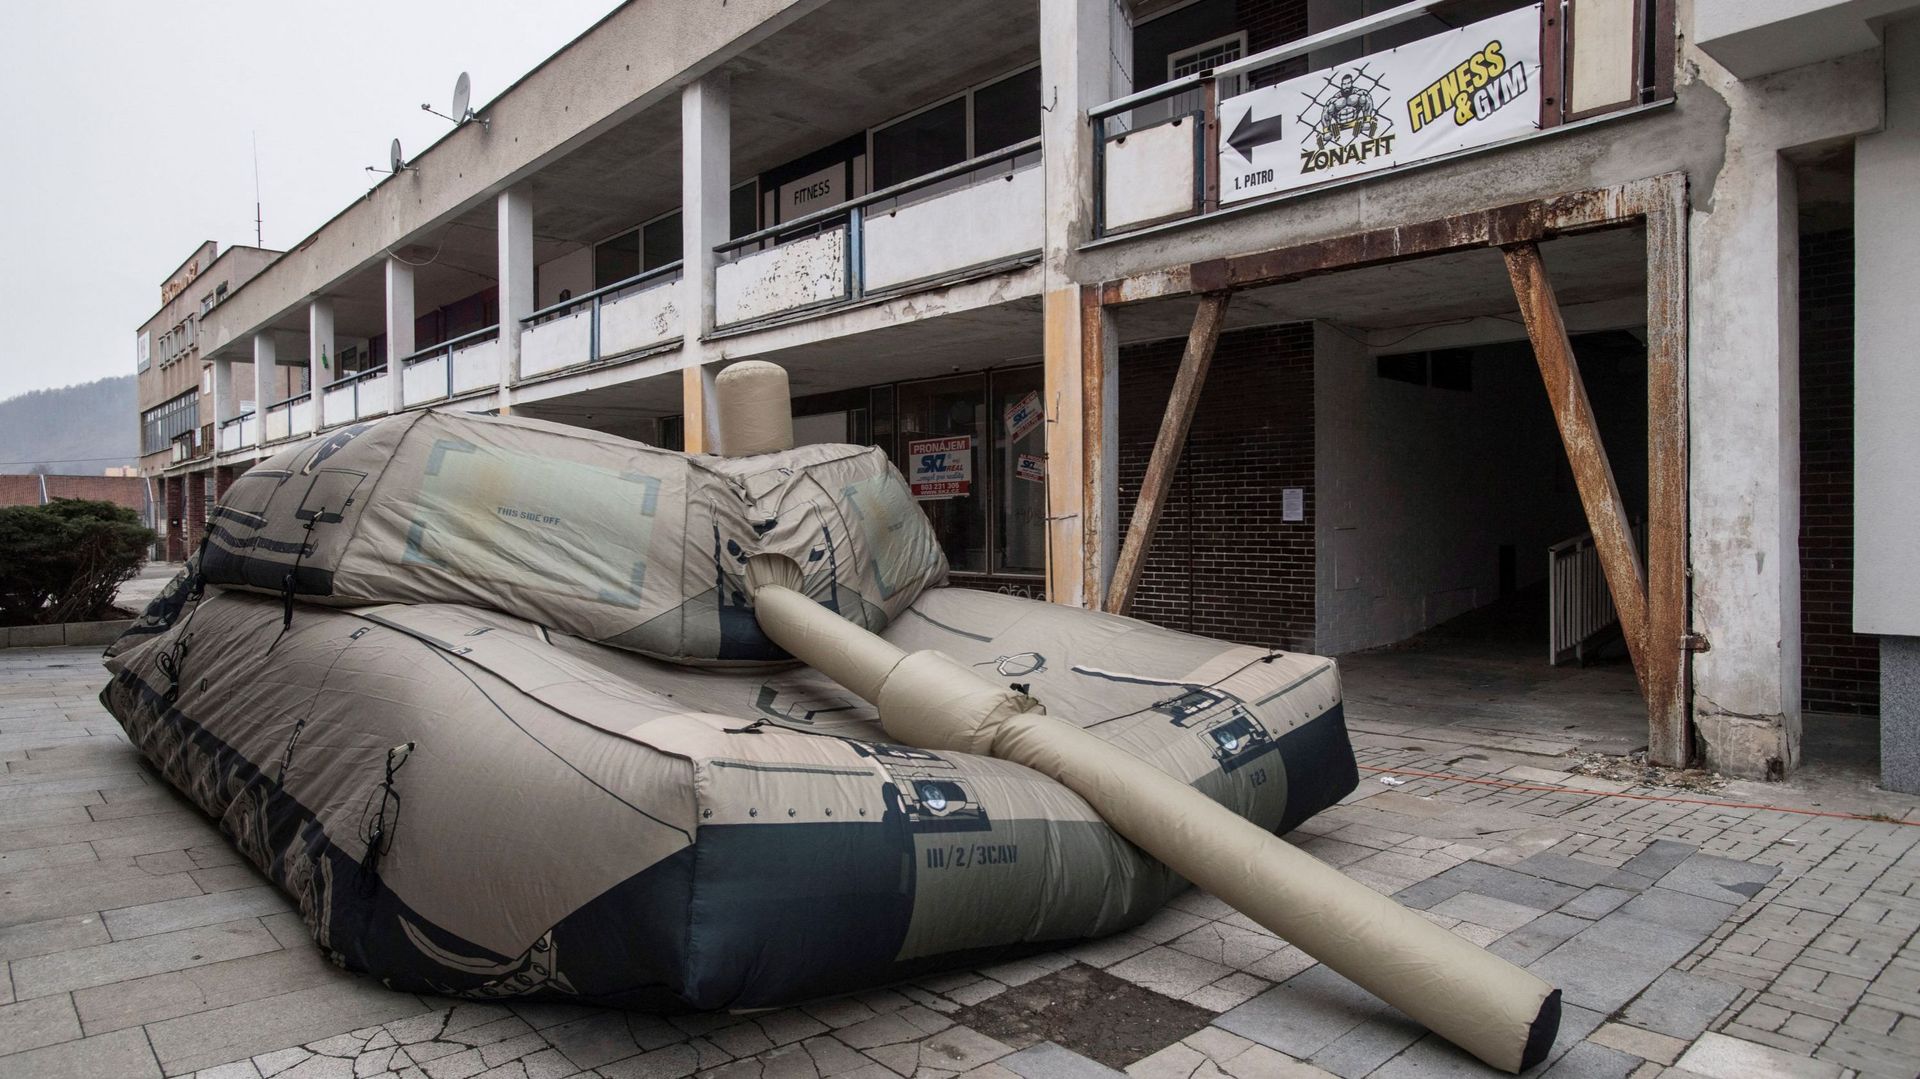 La guerra in Ucraina: carri armati gonfiabili sono usati al fronte per ingannare il nemico